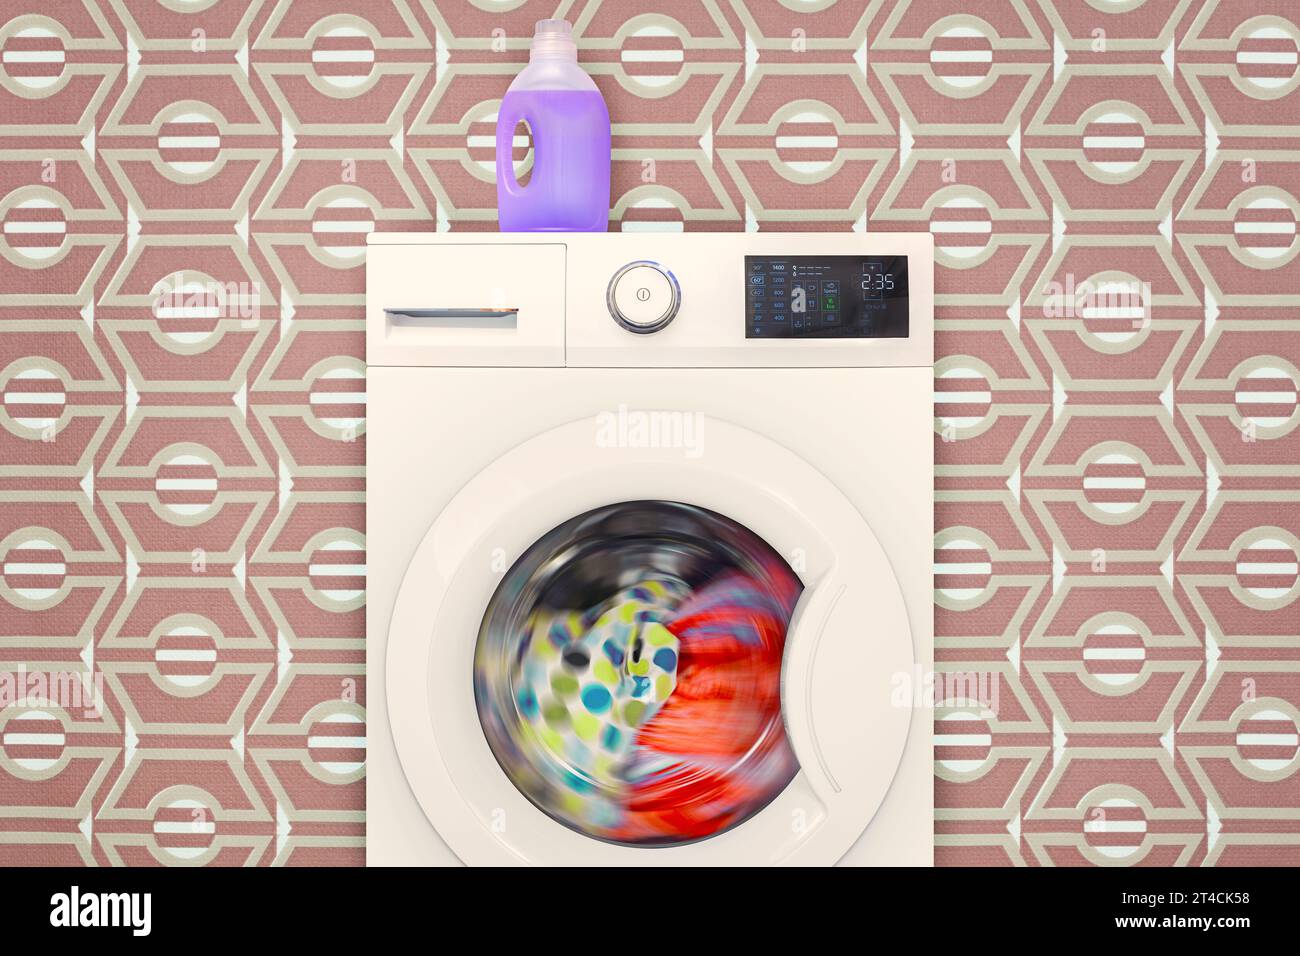 Gran lavadora juguete giratorio automático sonido luz feliz lavado